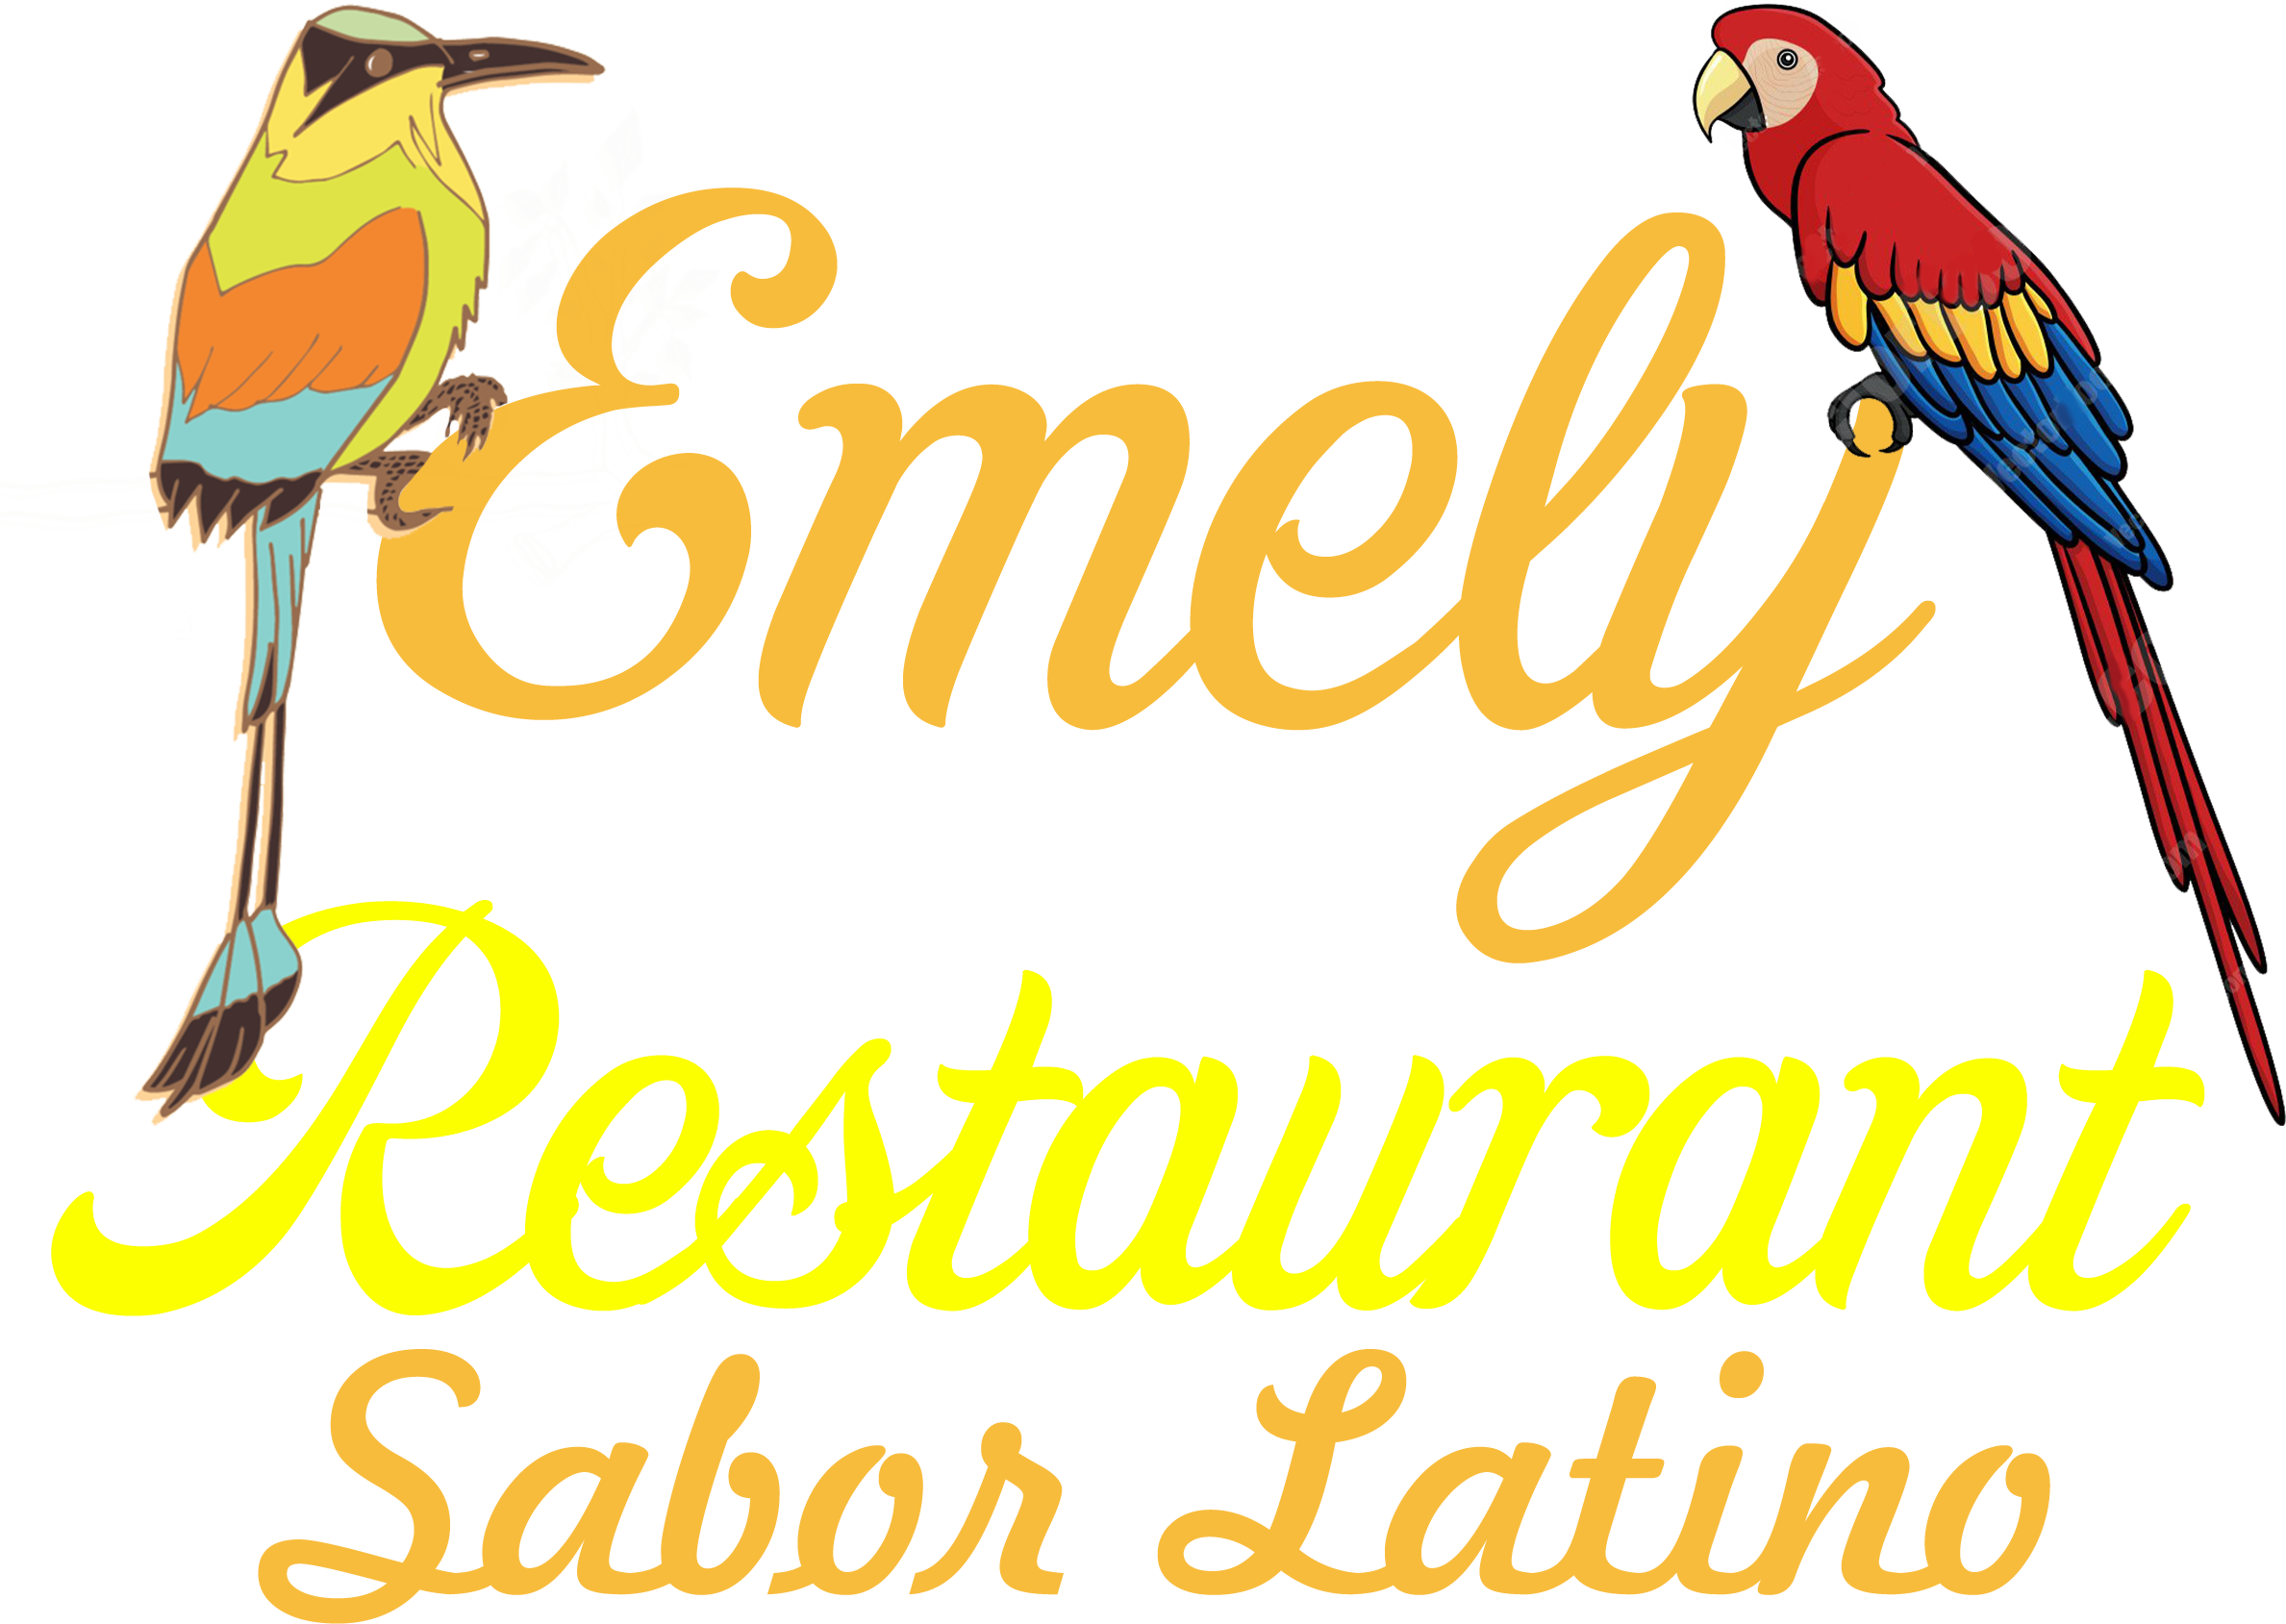 Emely Restaurant